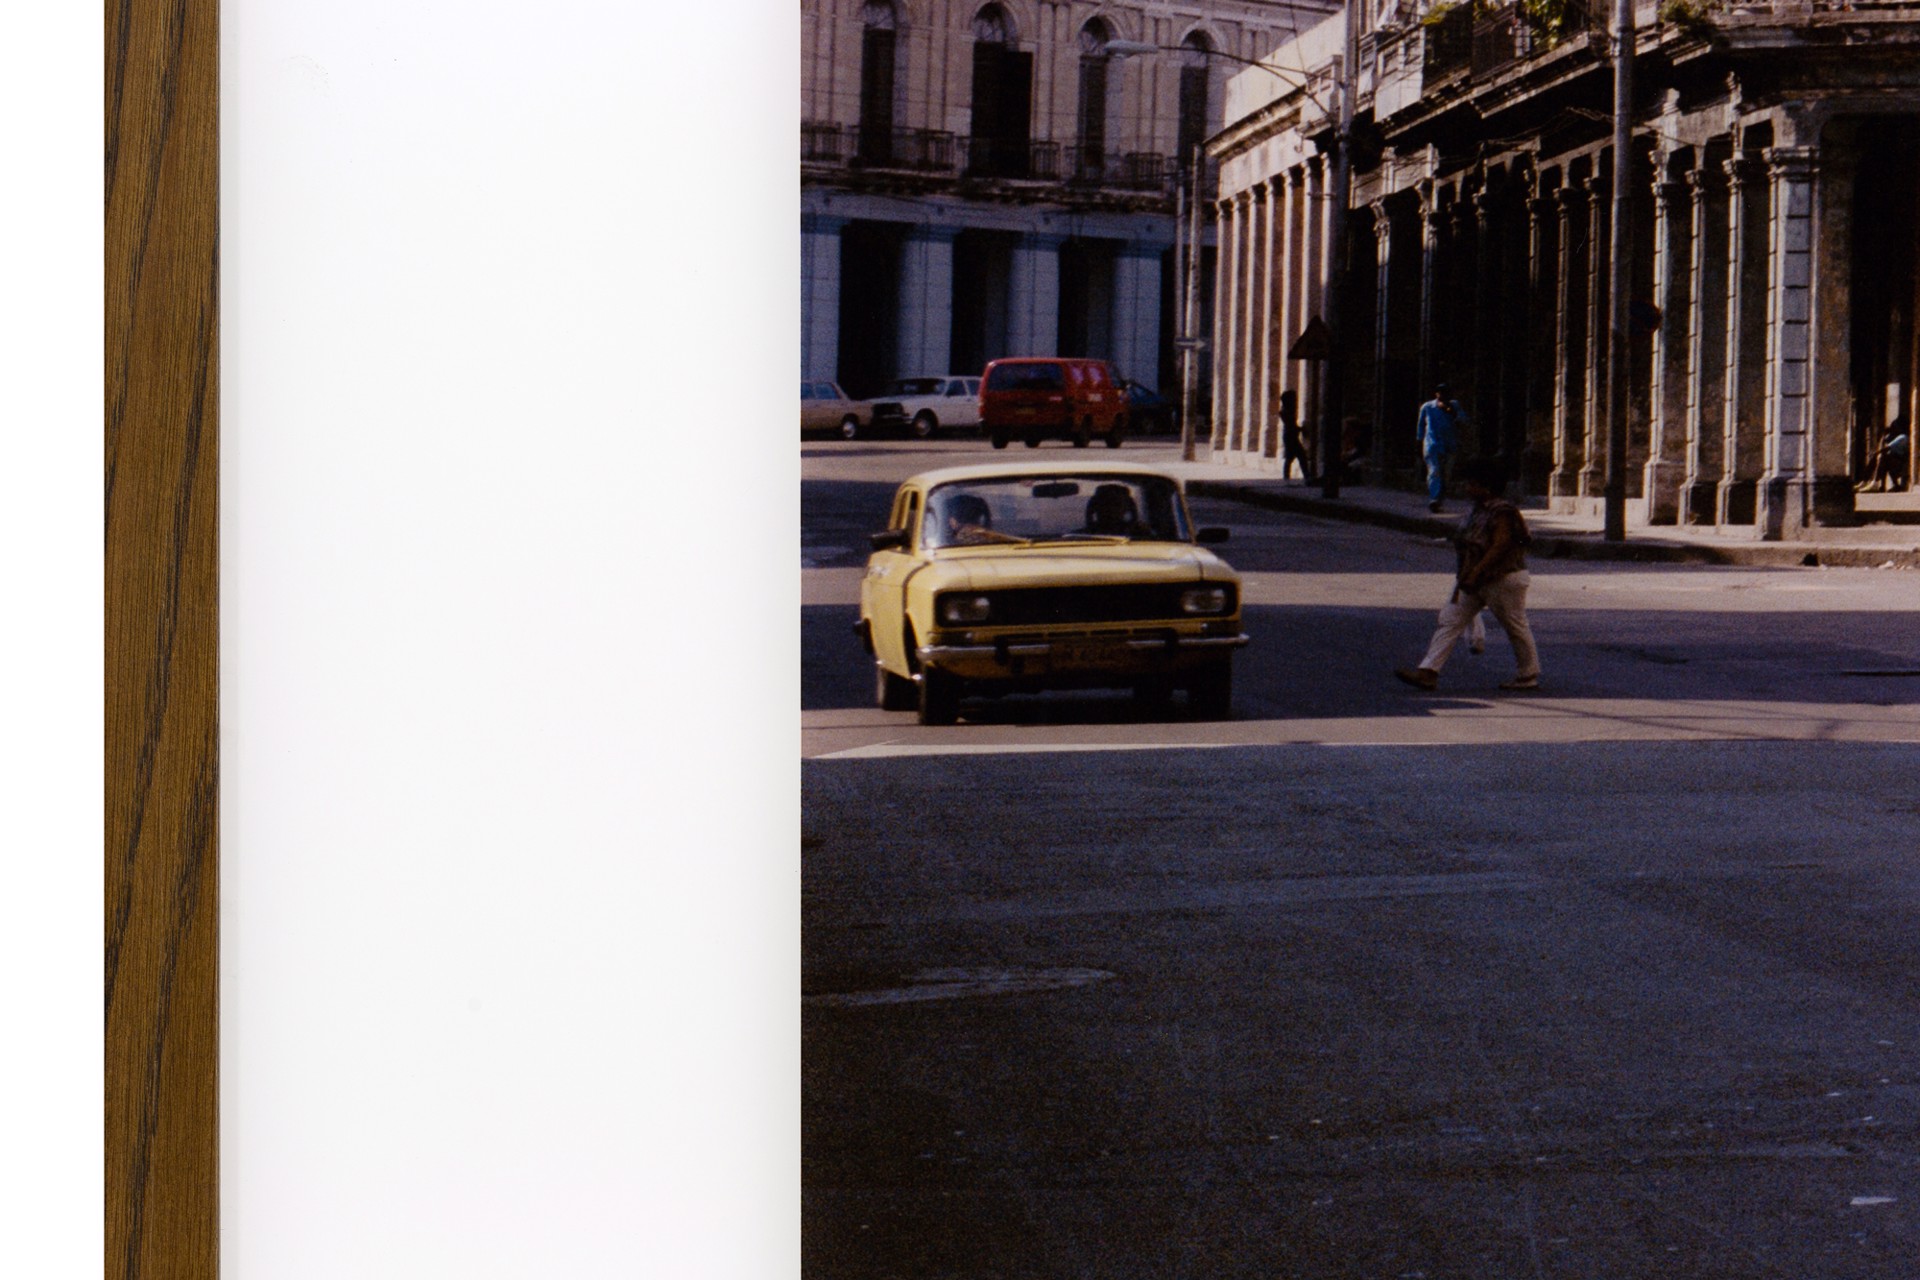 The Black Car, Havana by Wim Wenders